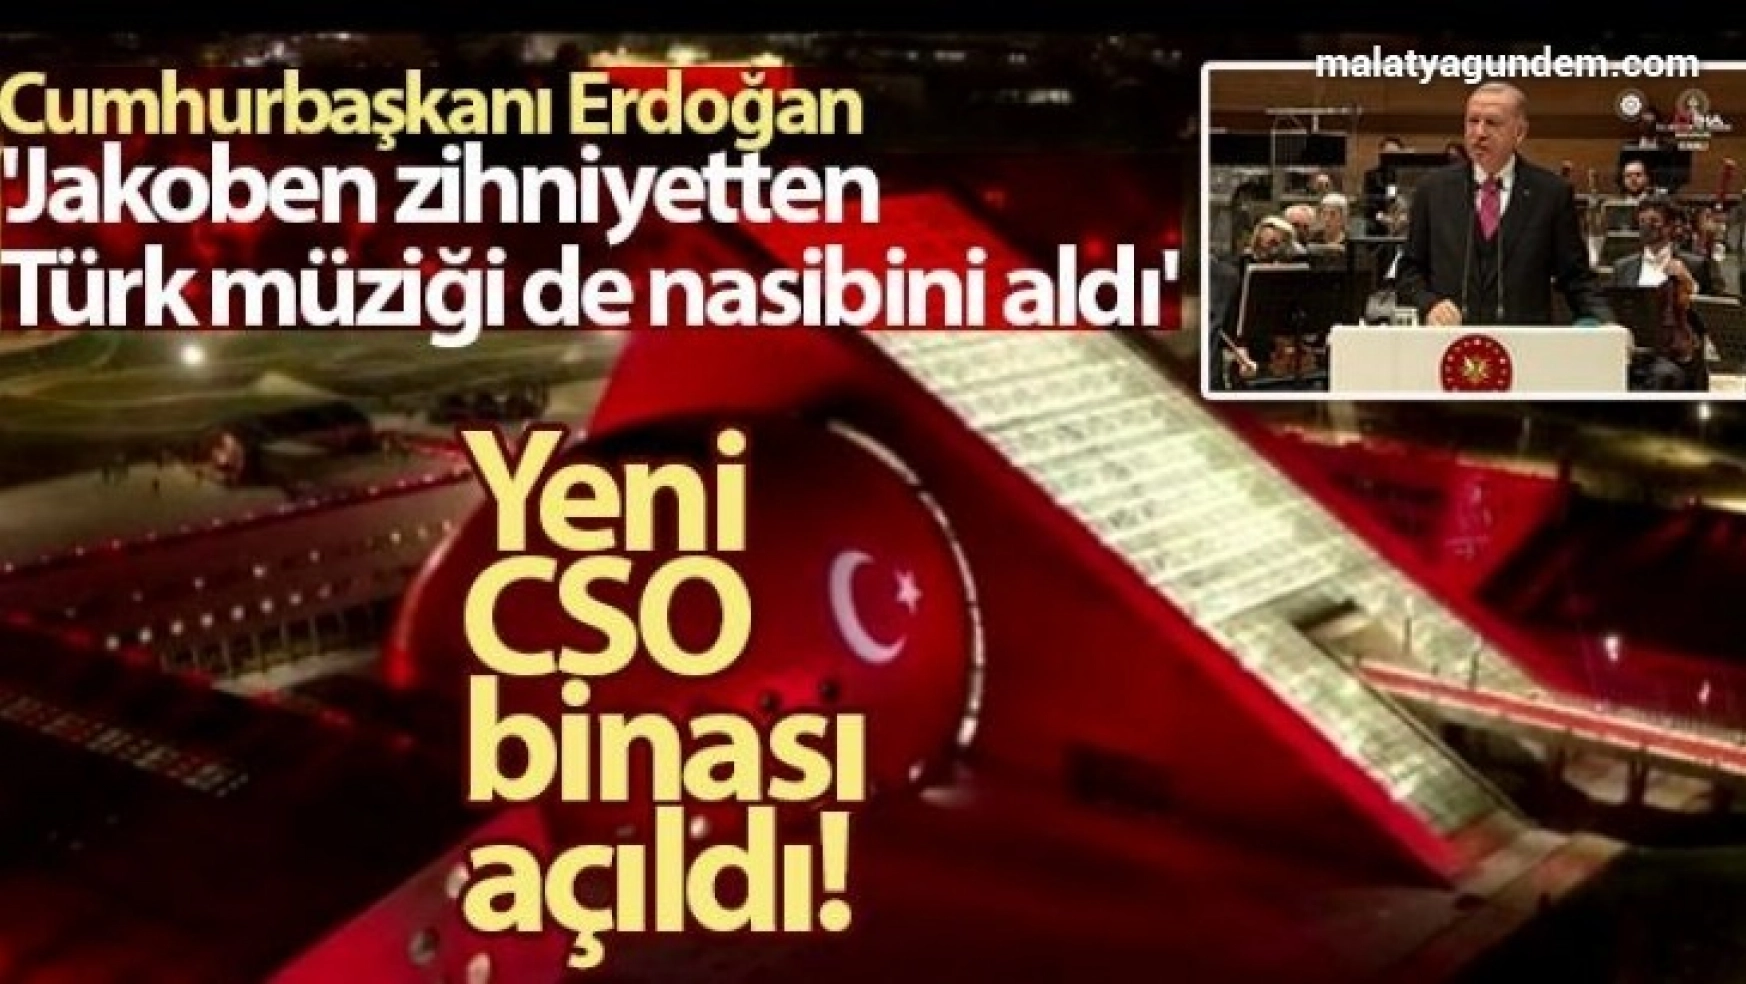 Yeni CSO binası açıldı! Cumhurbaşkanı Erdoğan: 'Jakoben zihniyetten Türk müziği de nasibini aldı'